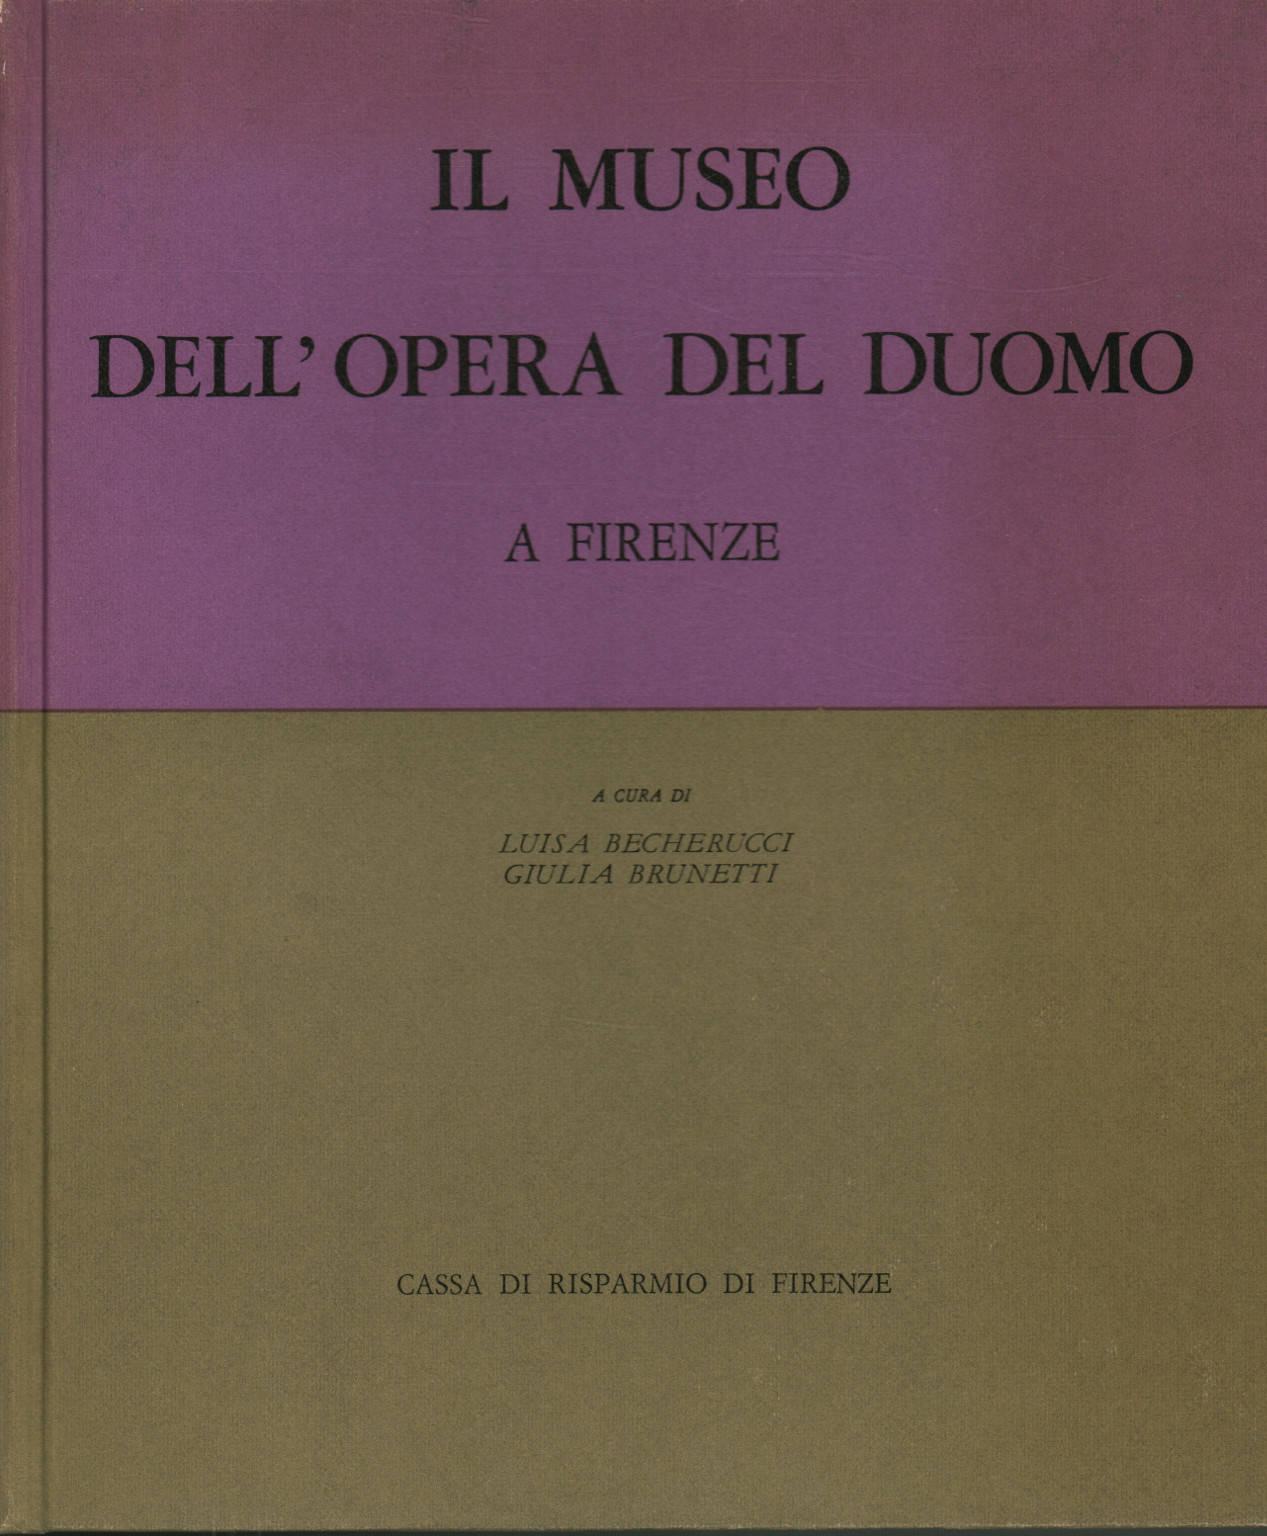 Das Museum dell ' opera del Duomo in Florenz. Lautstärke, wenn, s.zu.